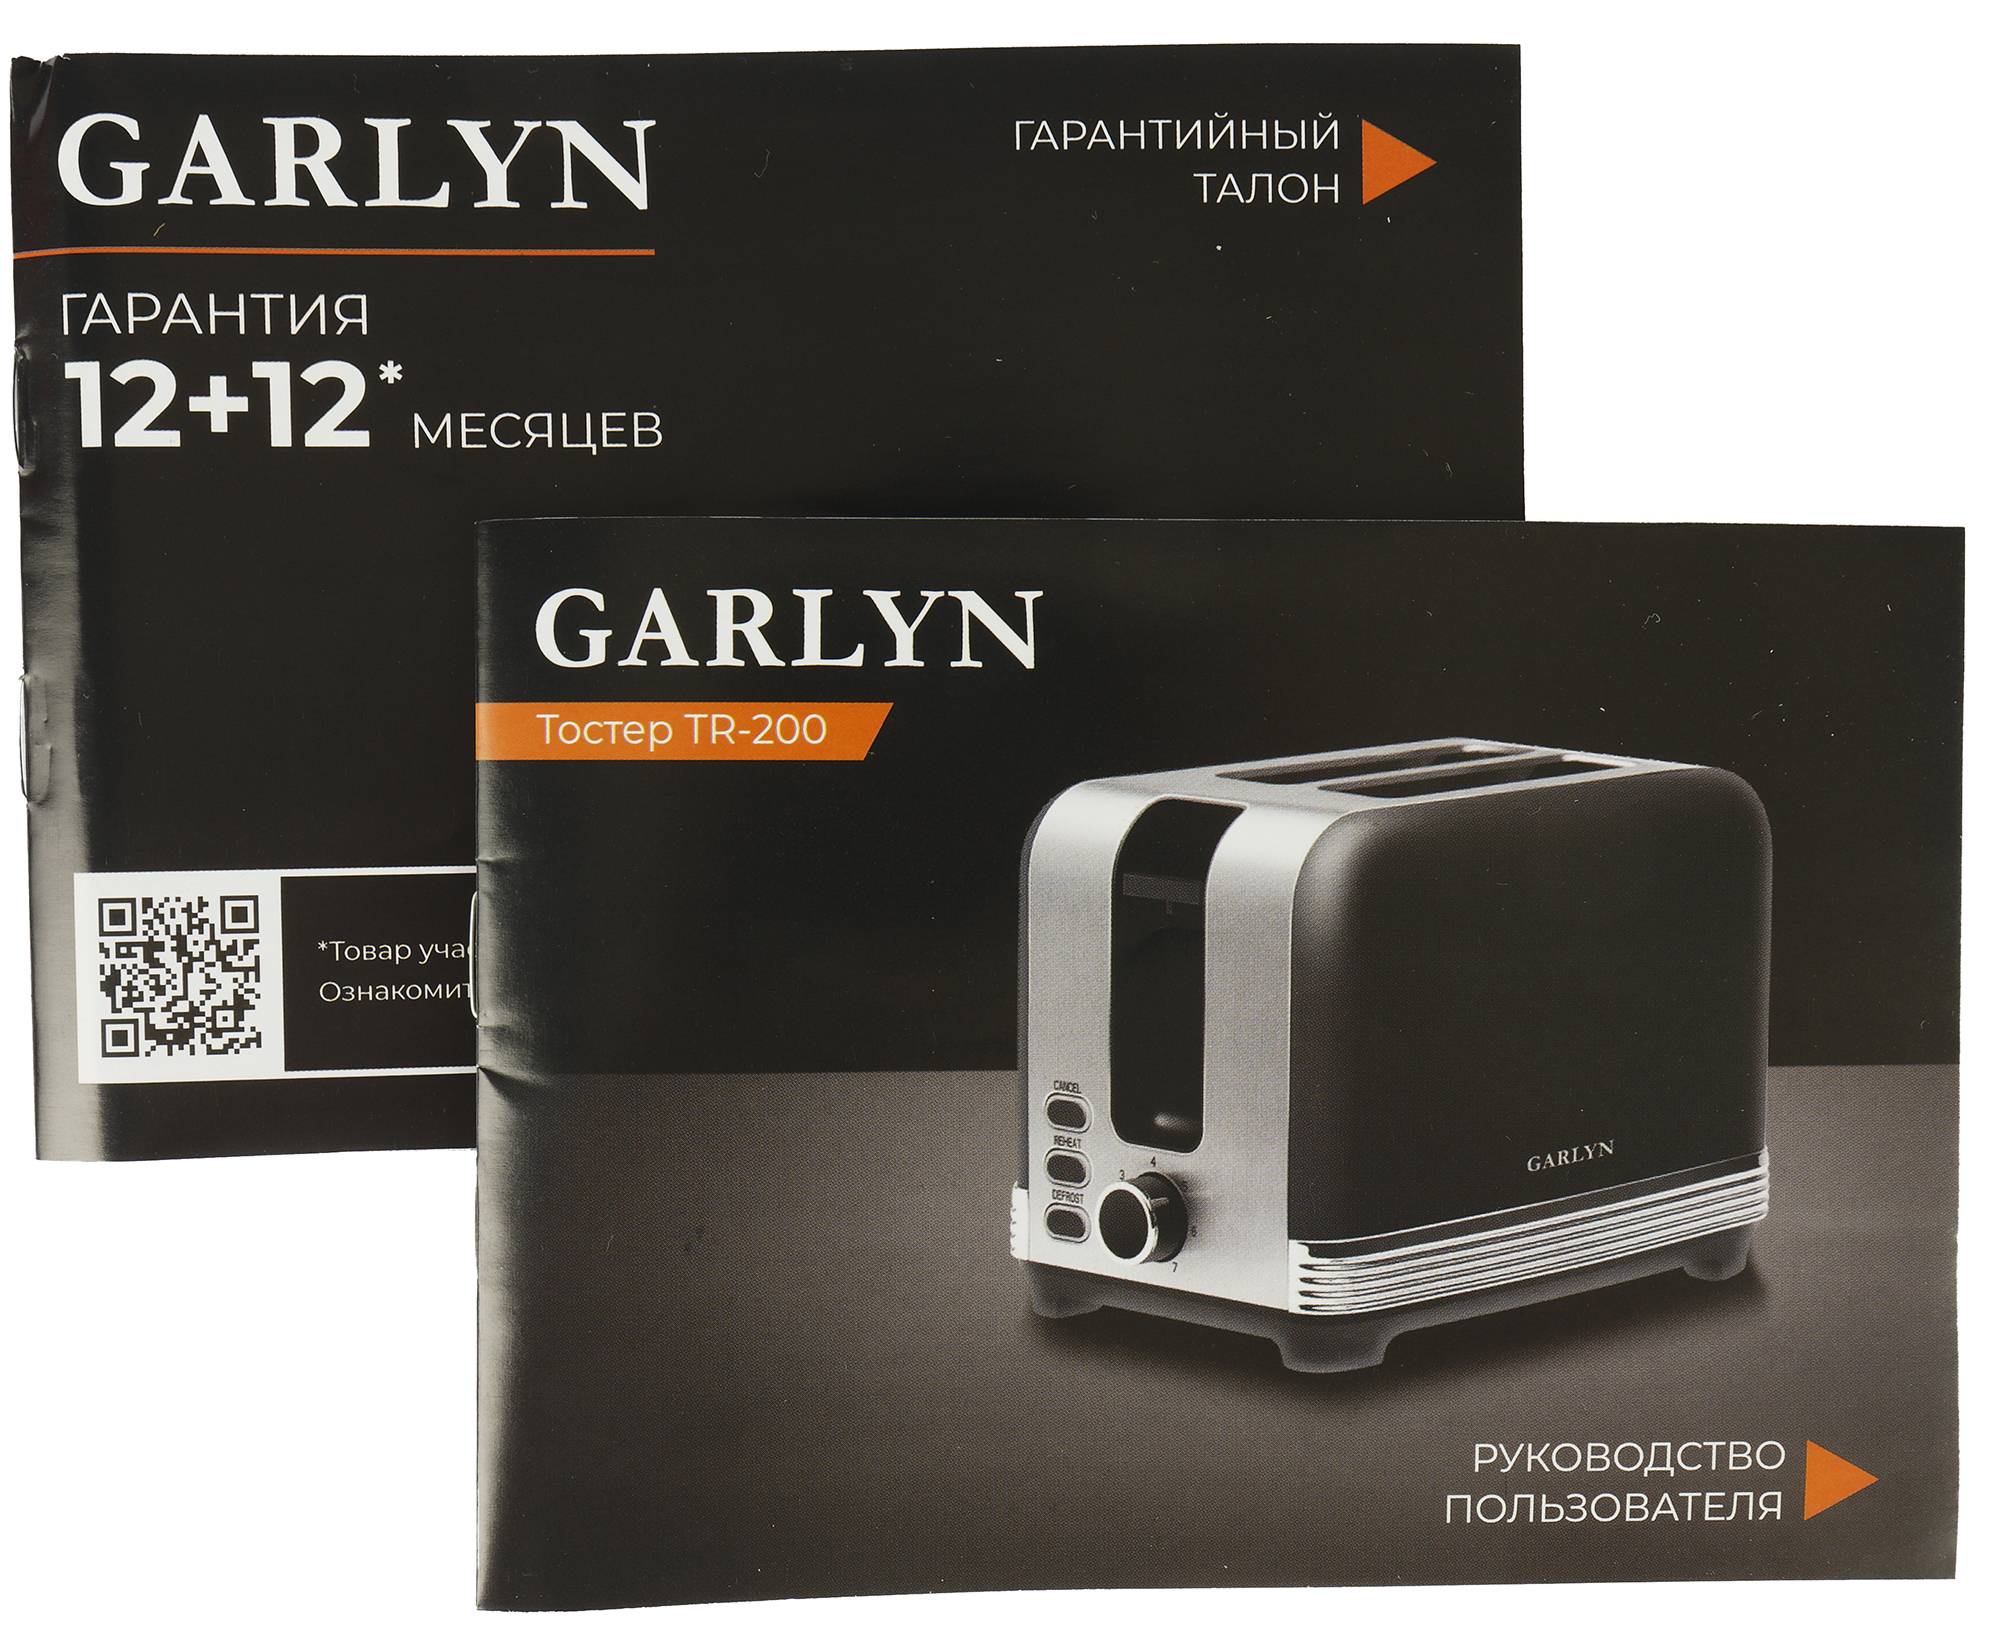 Garlyn gl 400 купить. Тостер Garlyn tr-200. Garlyn v-800 вакууматор. Беспроводной утюг Garlyn gt-240. Индукционные плиты Garlyn h-7000.